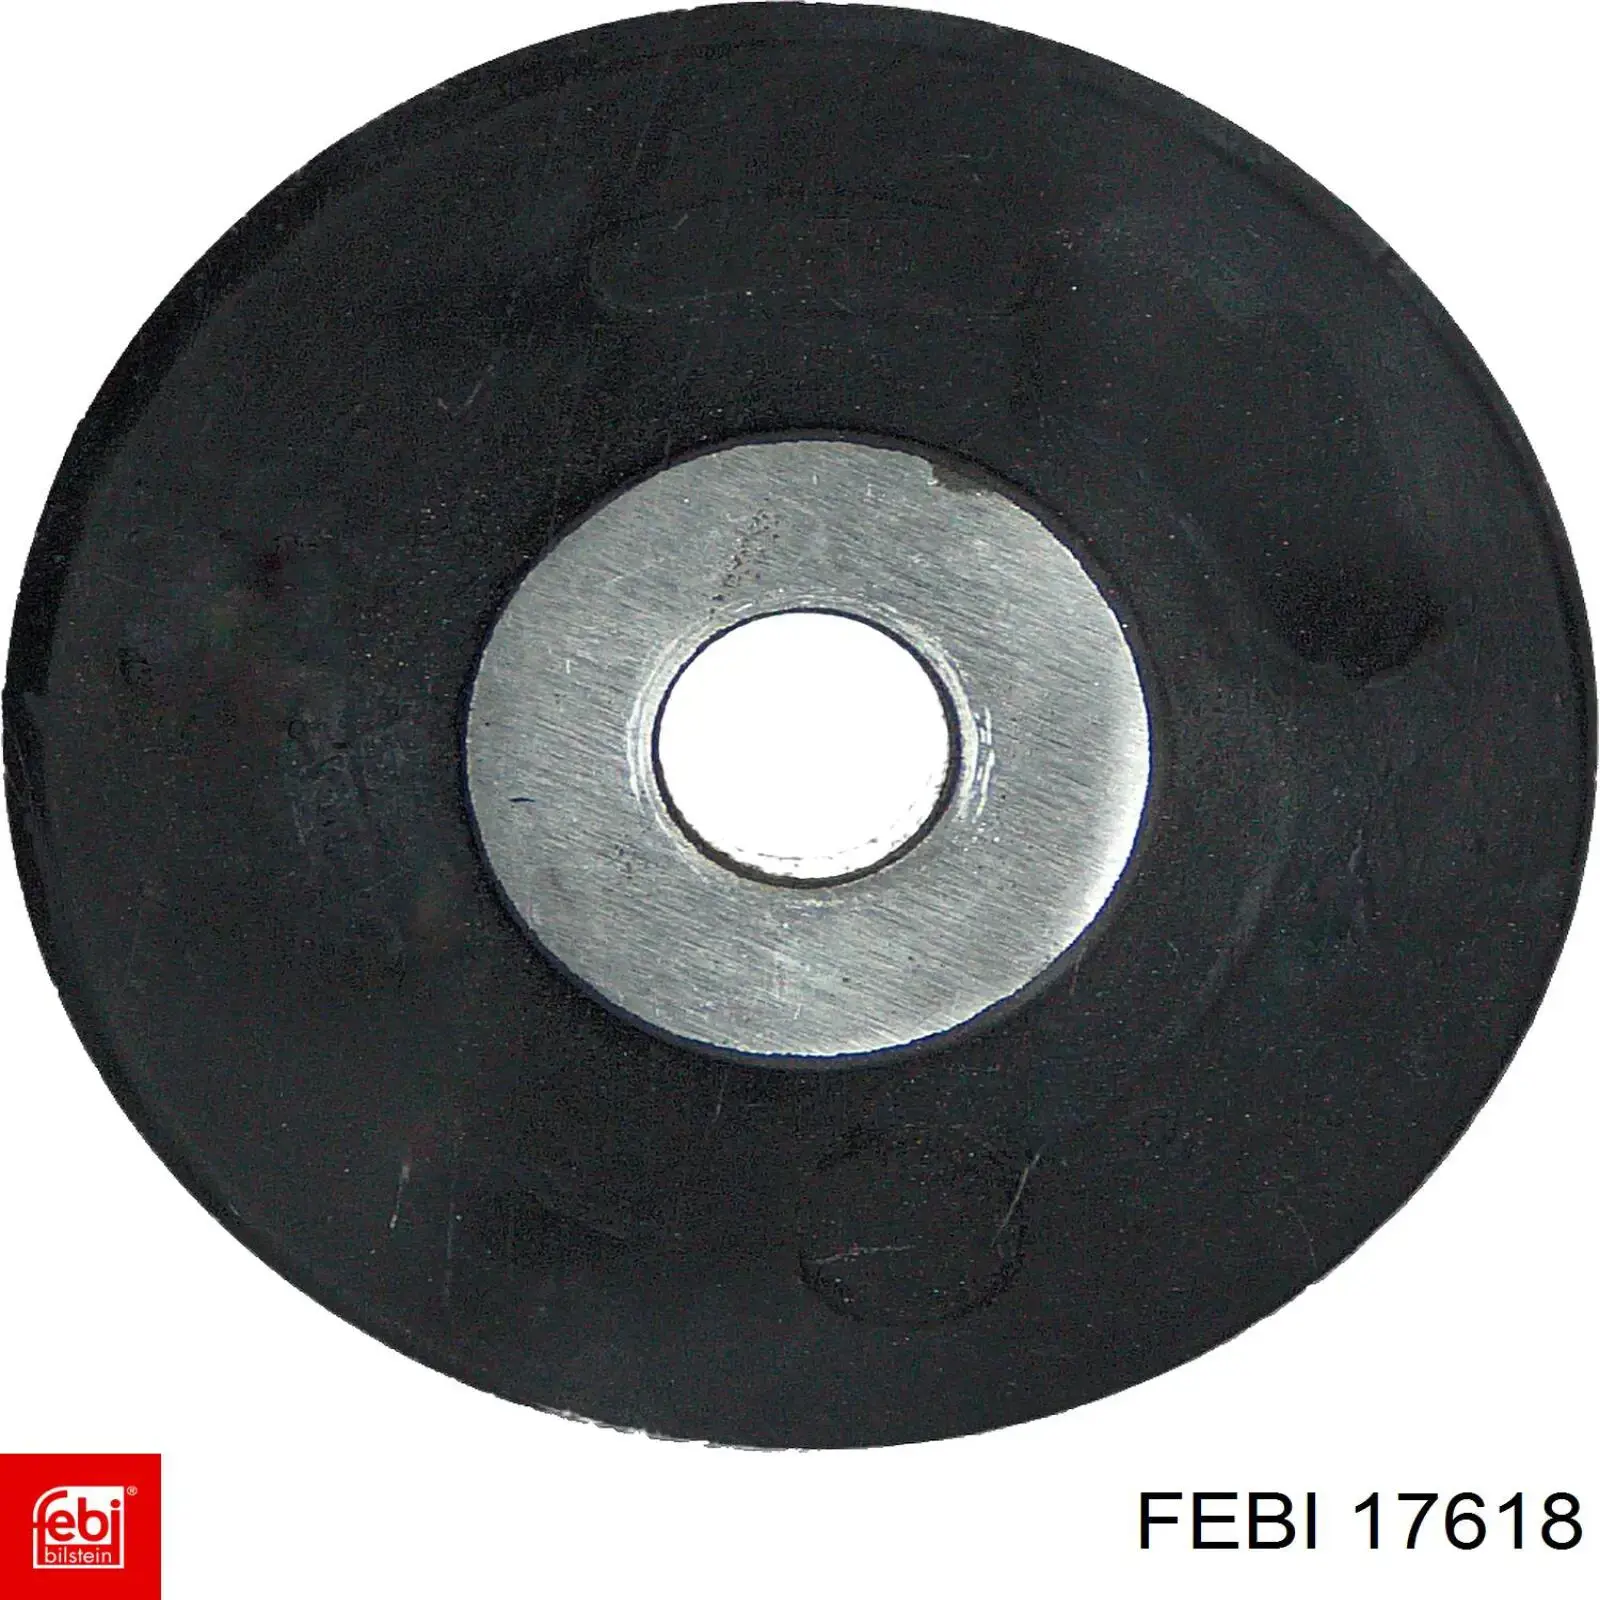 17618 Febi сайлентблок задней балки (подрамника)